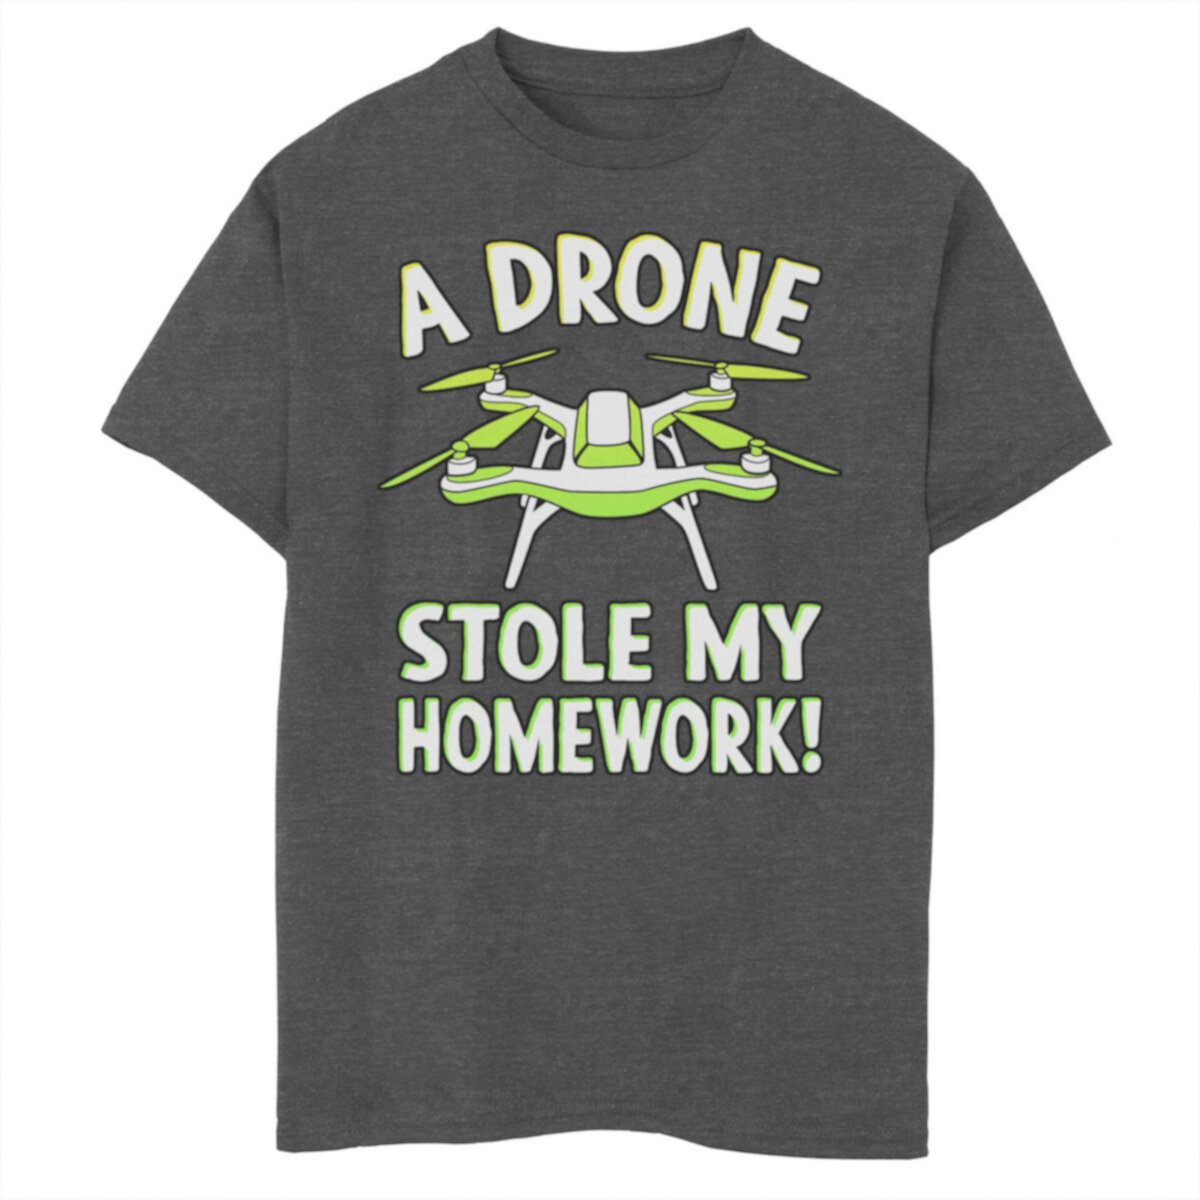 Футболка Boys 8-20 Drone Stole My Homework с рисунком Unbranded